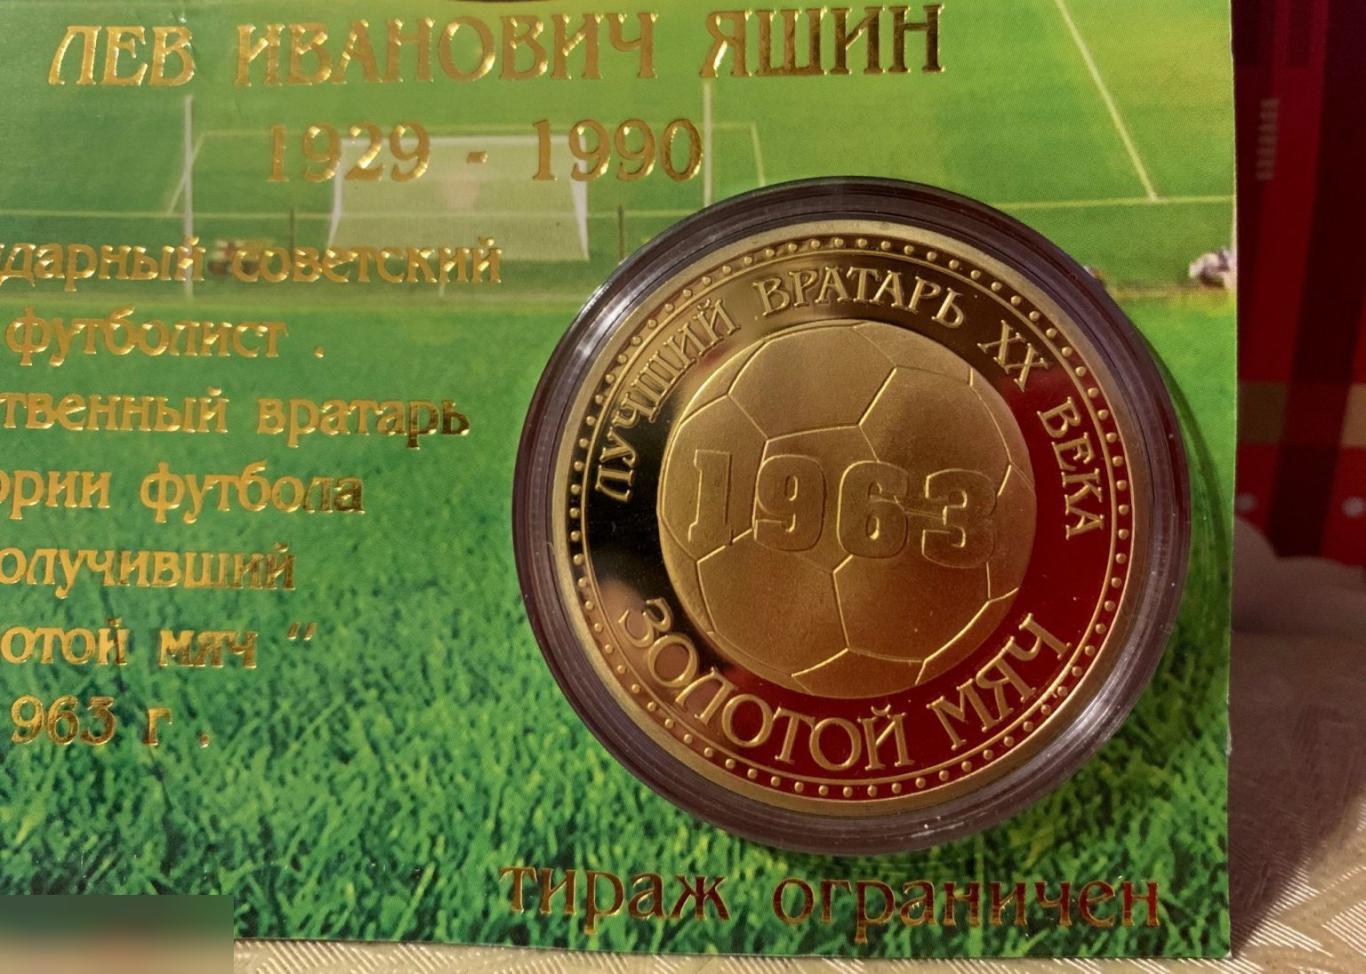 Лев Яшин! Коллекционный сувенирный жетон (монета) 3